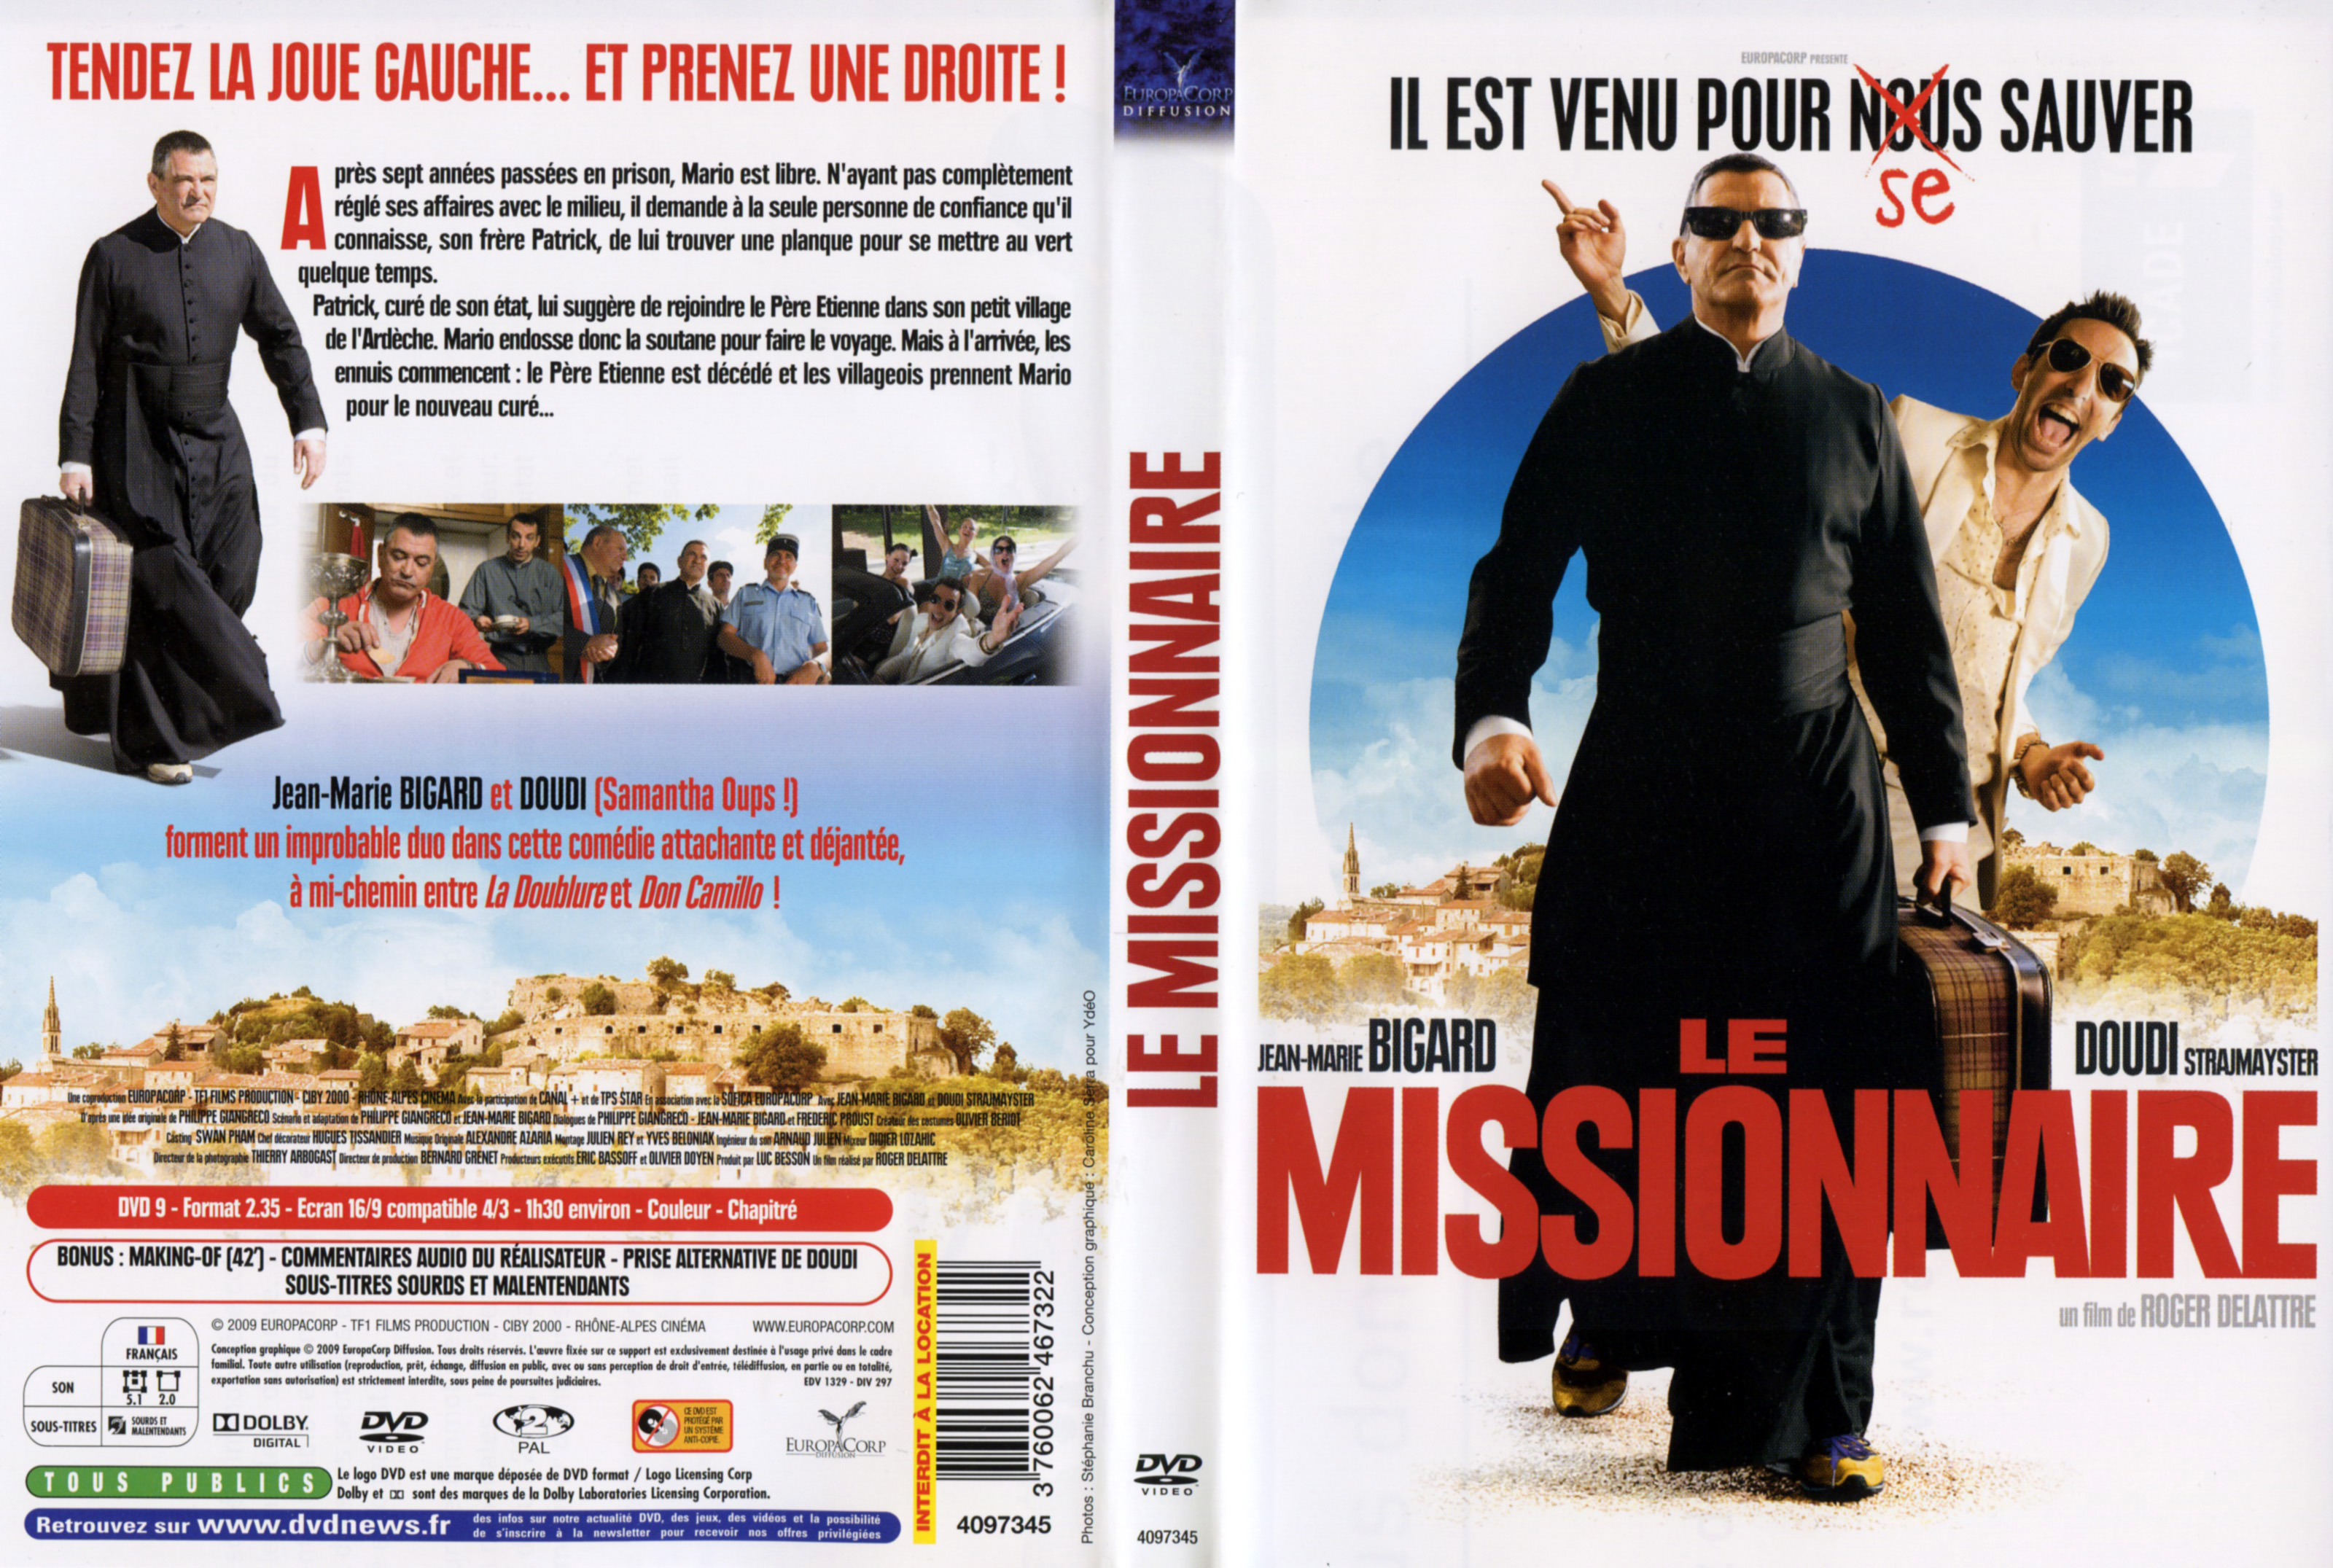 Jaquette DVD Le missionnaire v2